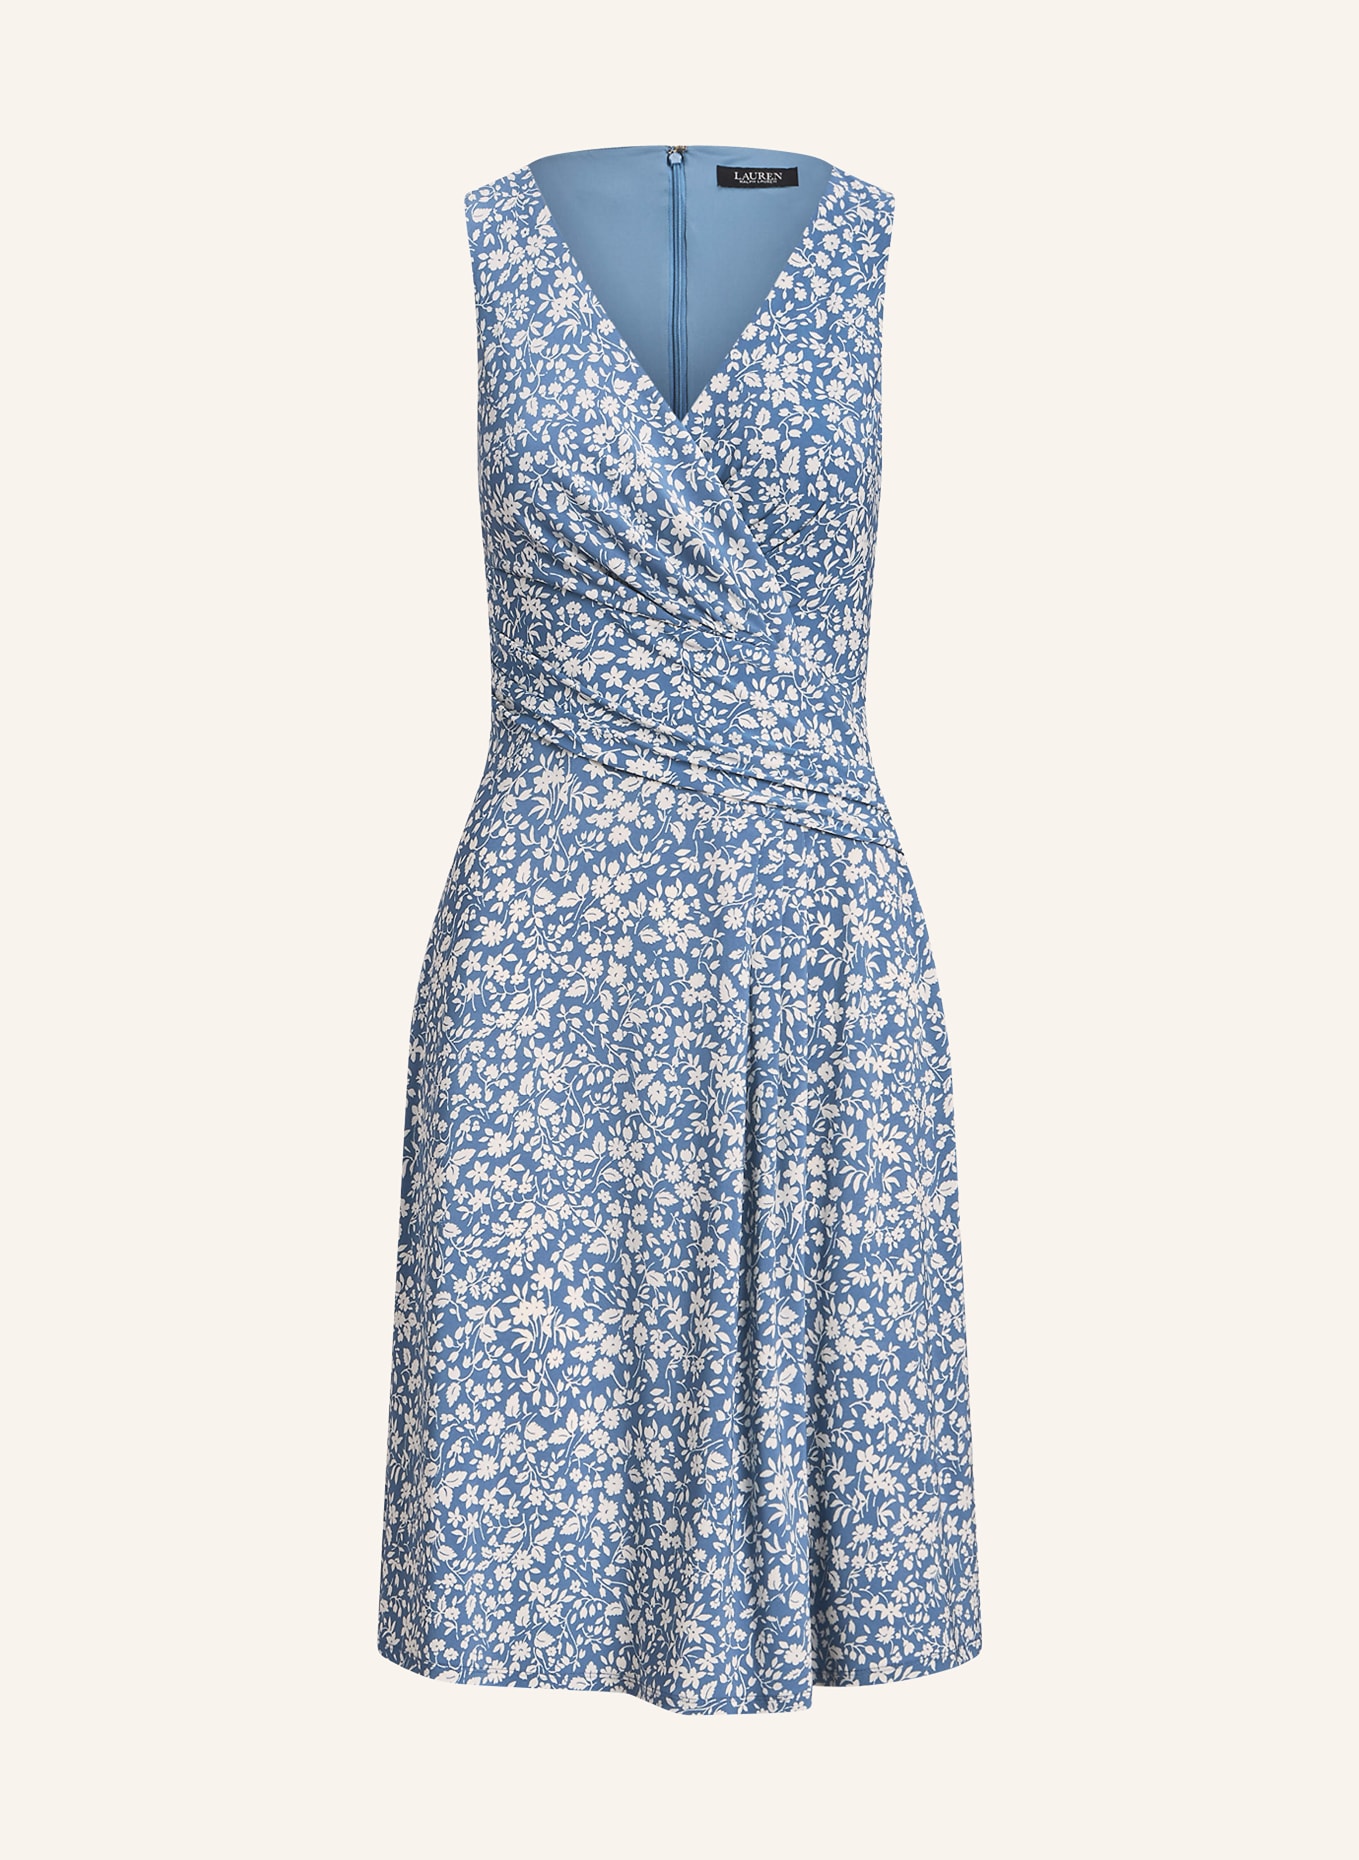 LAUREN RALPH LAUREN Jersey dress, Color: LIGHT BLUE/ CREAM (Image 1)